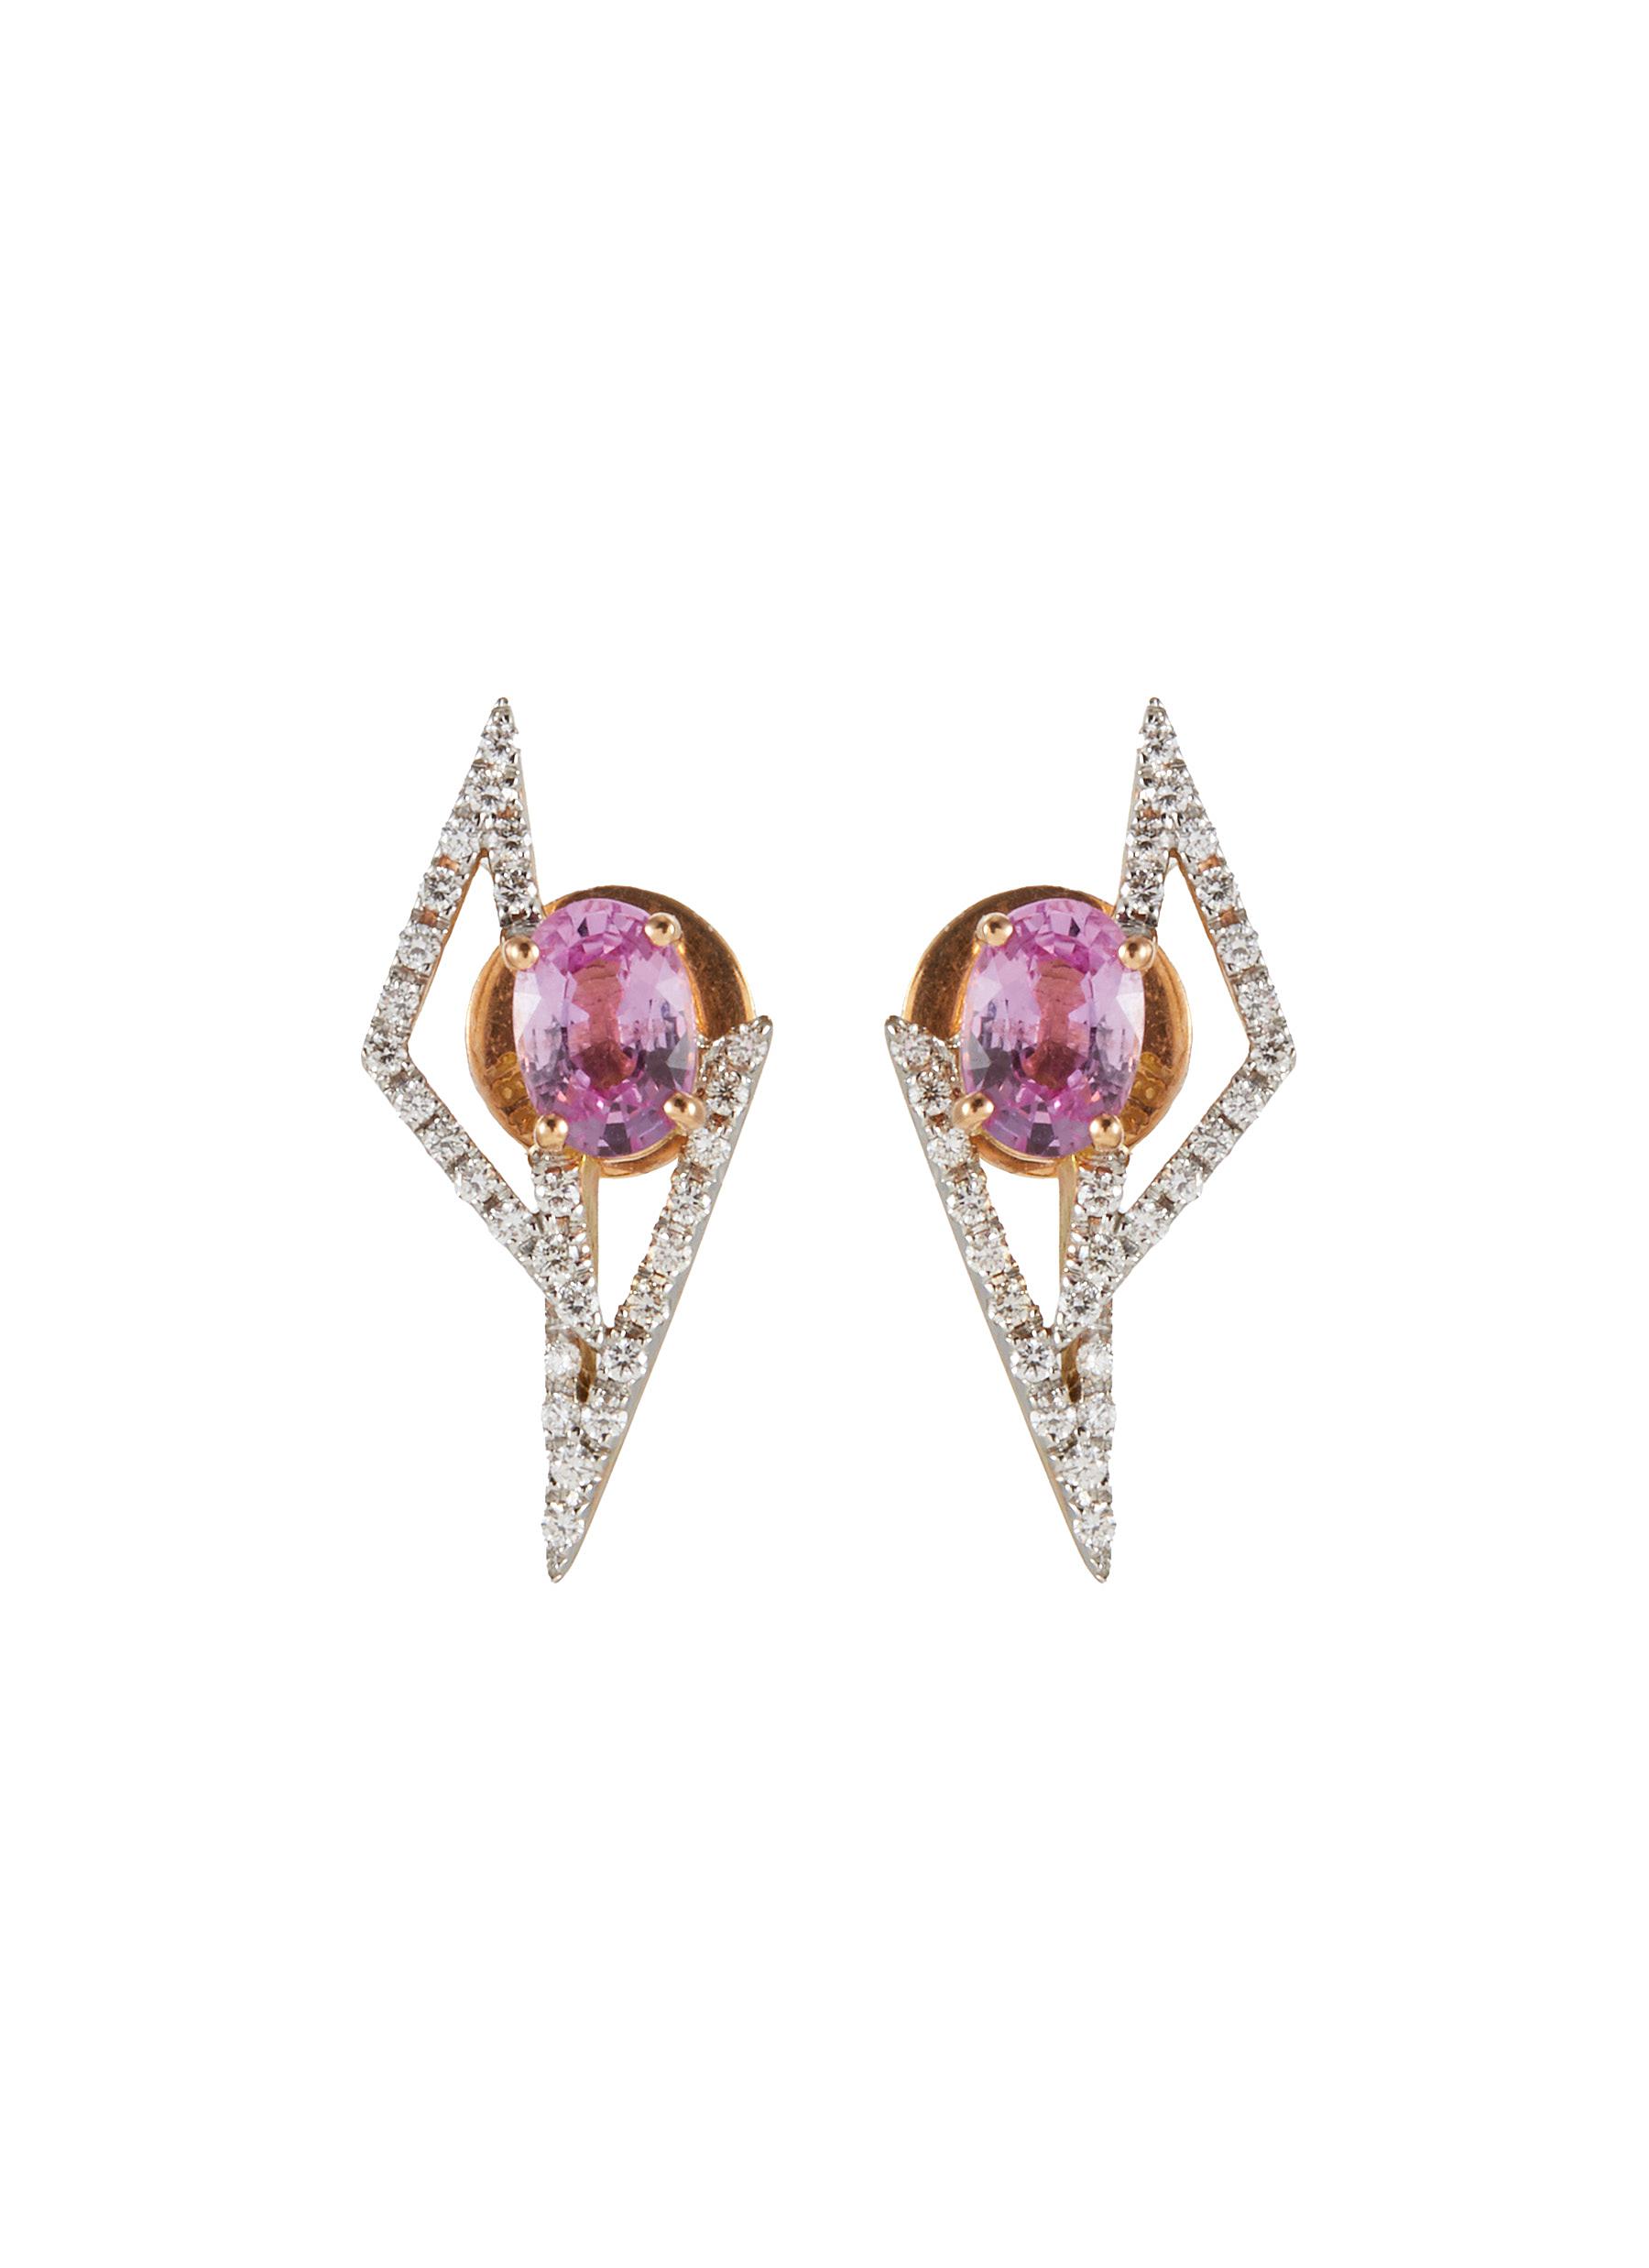 KAVANT & SHARART ‘GeoArt' Diamond Pink Sapphire 18K Rose Gold Earrings